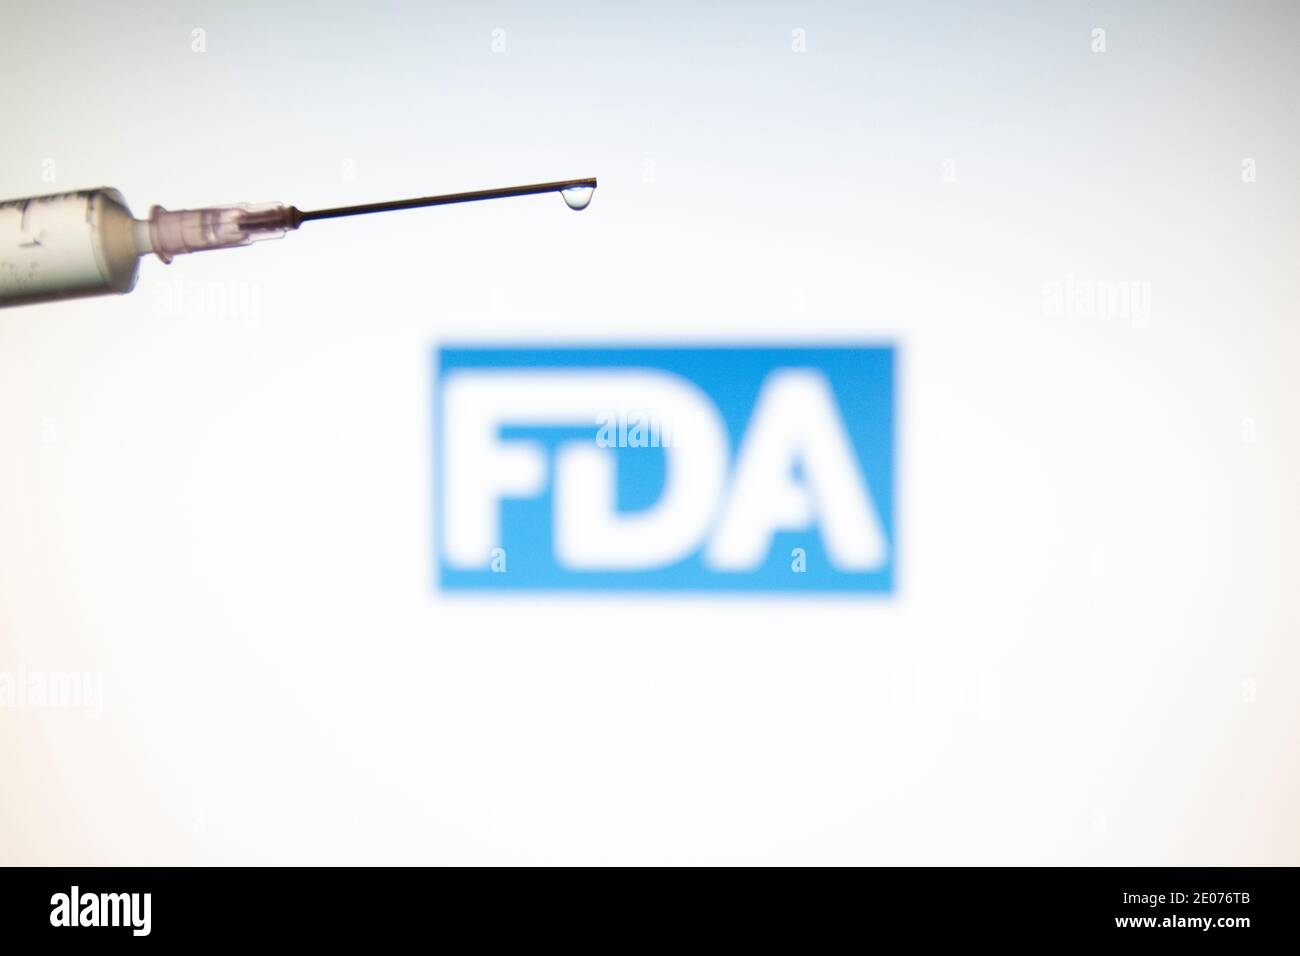 Niederlande. Dezember 2020. In dieser Abbildung ist eine medizinische Spritze mit FDA-Logo ( Food and Drug Administration of the United States ) zu sehen.FDA-zugelassener Pfizer/BioNTech und Moderna COVID-19 Coronavirus-Impfstoff für den Notfall in den USA, mit einer Notfallgenehmigung Kredit: Nik Oiko/SOPA Images/ZUMA Wire/Alamy Live News Stockfoto